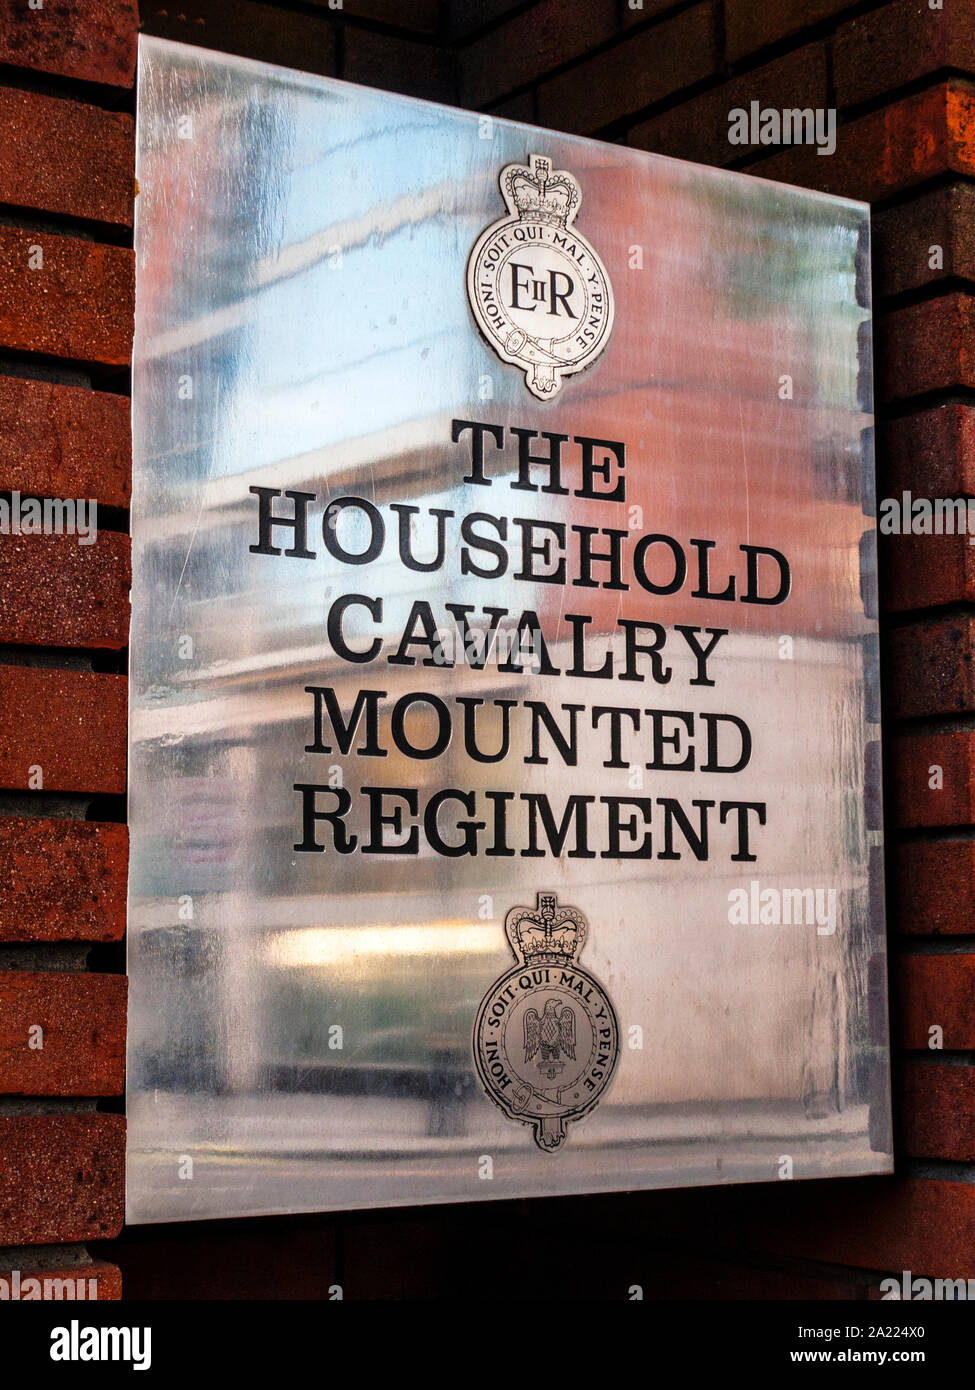 La Household Cavalry régiment monté, plaque murale, Londres Banque D'Images